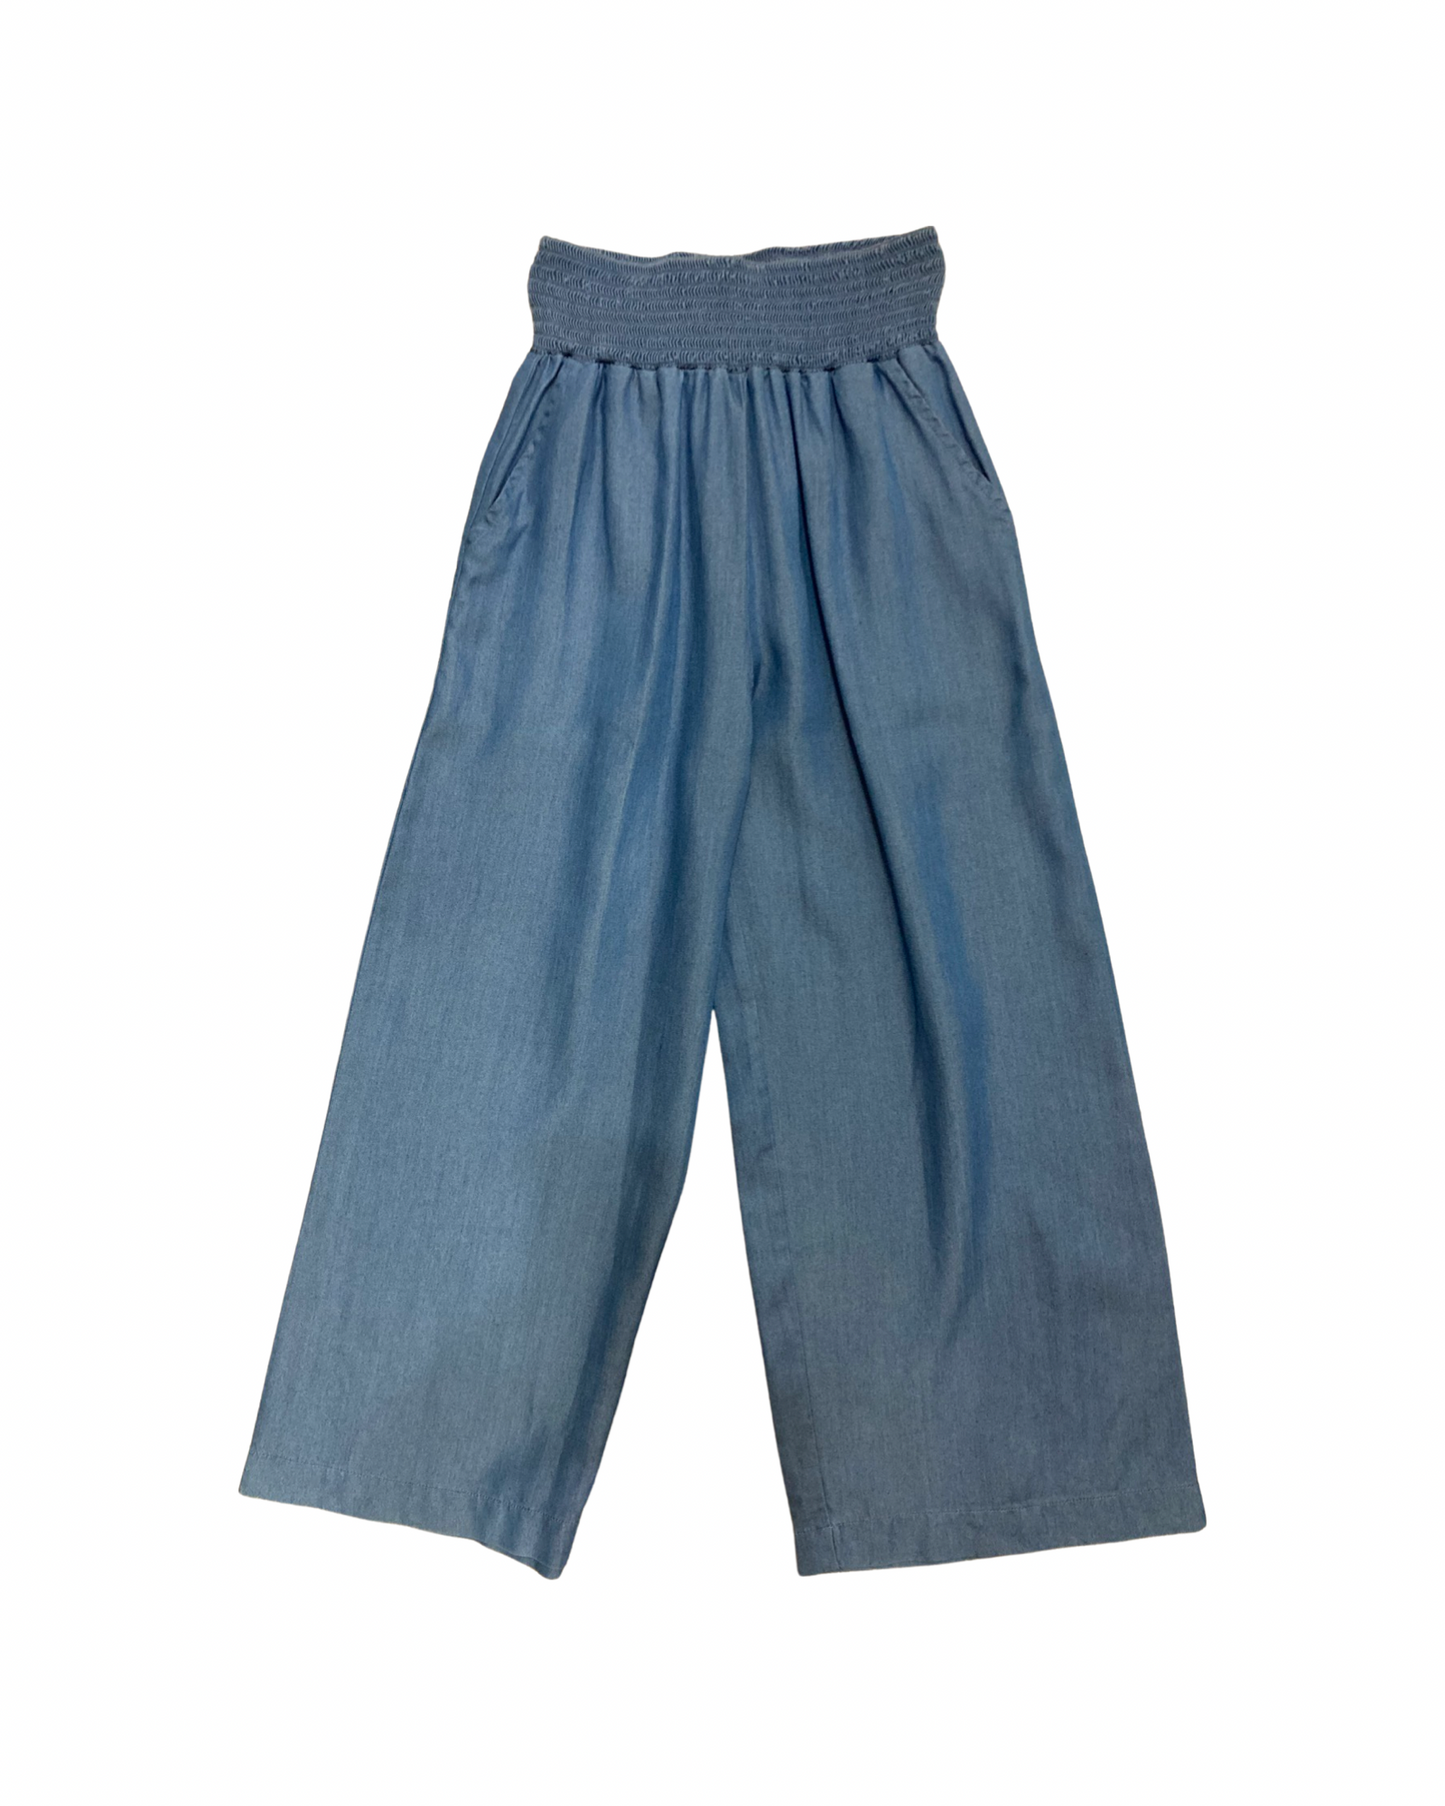 pantalone , Pantalone larghe morbide colore Jeans per bambina da 8anni a 16anni Y-Clù Y19100 - BabyBimbo 0-16, abbigliamento bambini